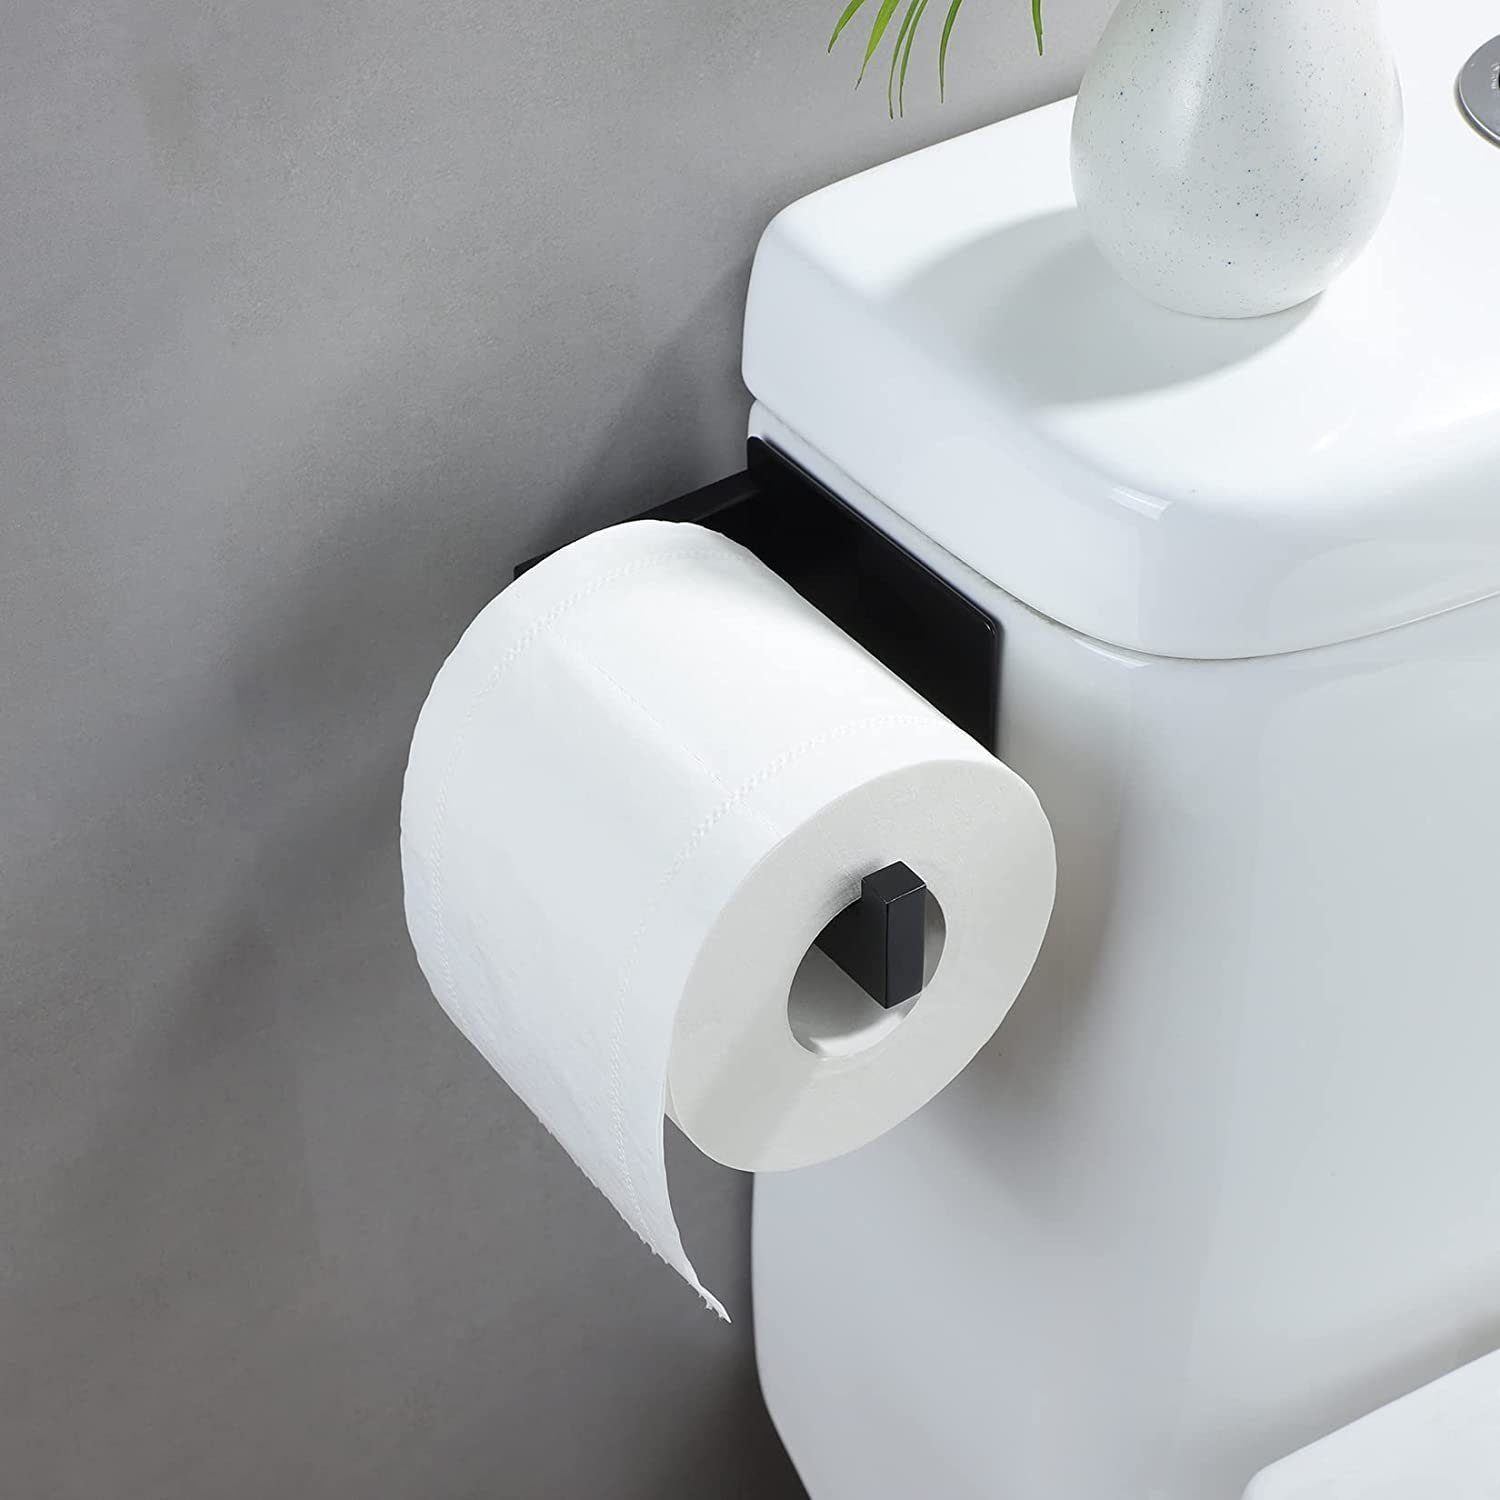 Haiaveng Toilettenpapierhalter erforderlich, Kein kein Bohren Bohren Toilettenpapierhalter, schwarz